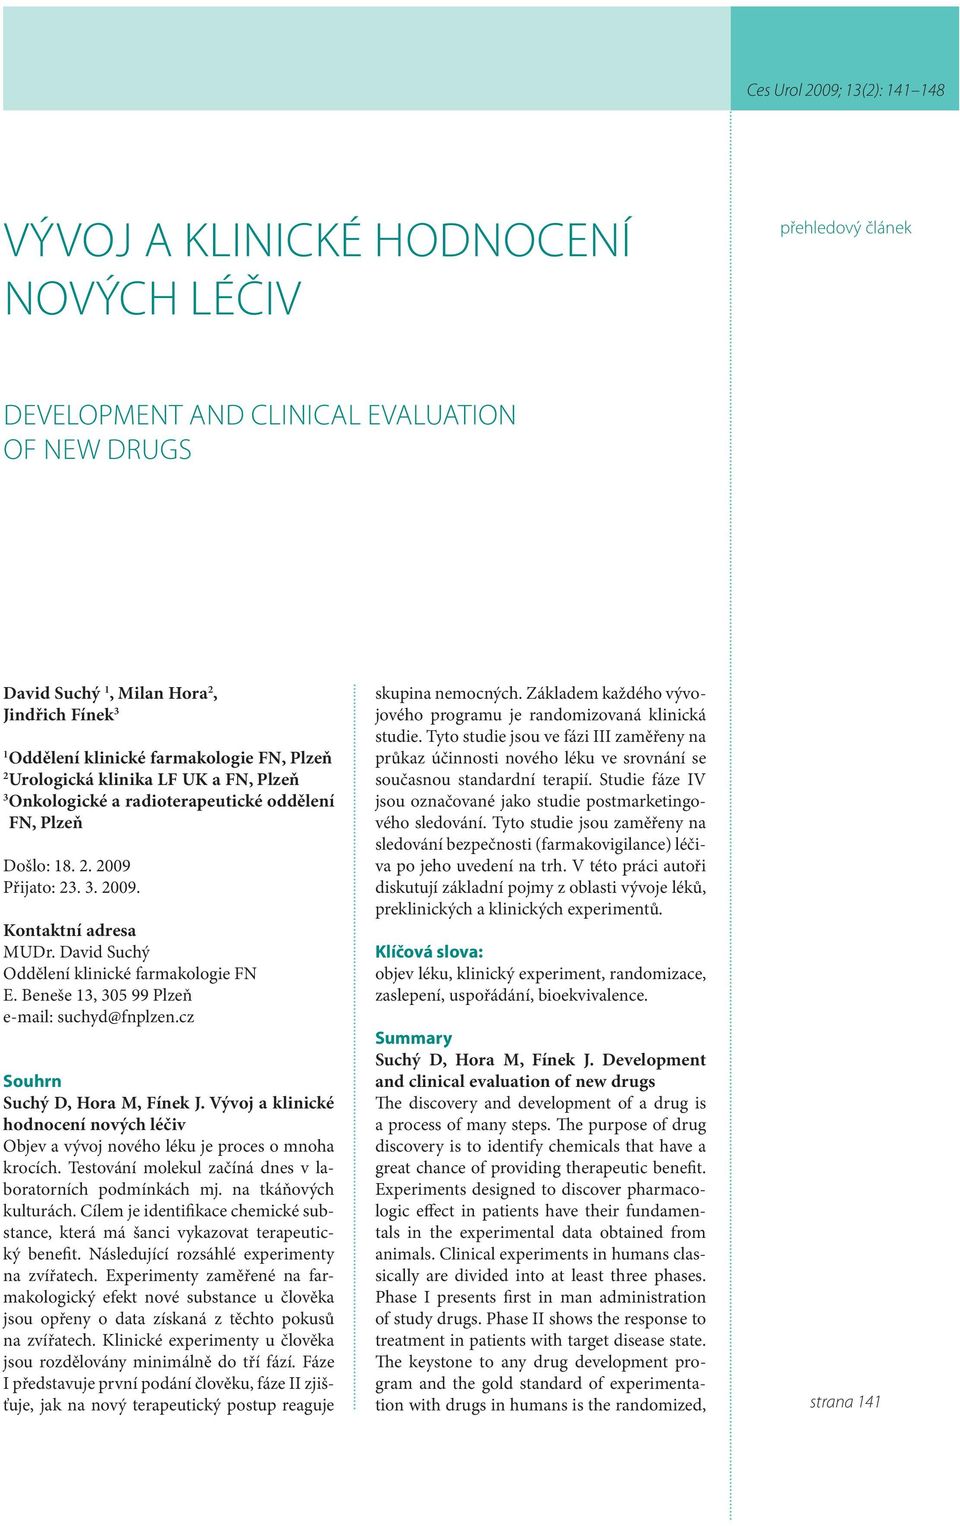 David Suchý Oddělení klinické farmakologie FN E. Beneše 13, 305 99 Plzeň e-mail: suchyd@fnplzen.cz Souhrn Suchý D, Hora M, Fínek J.